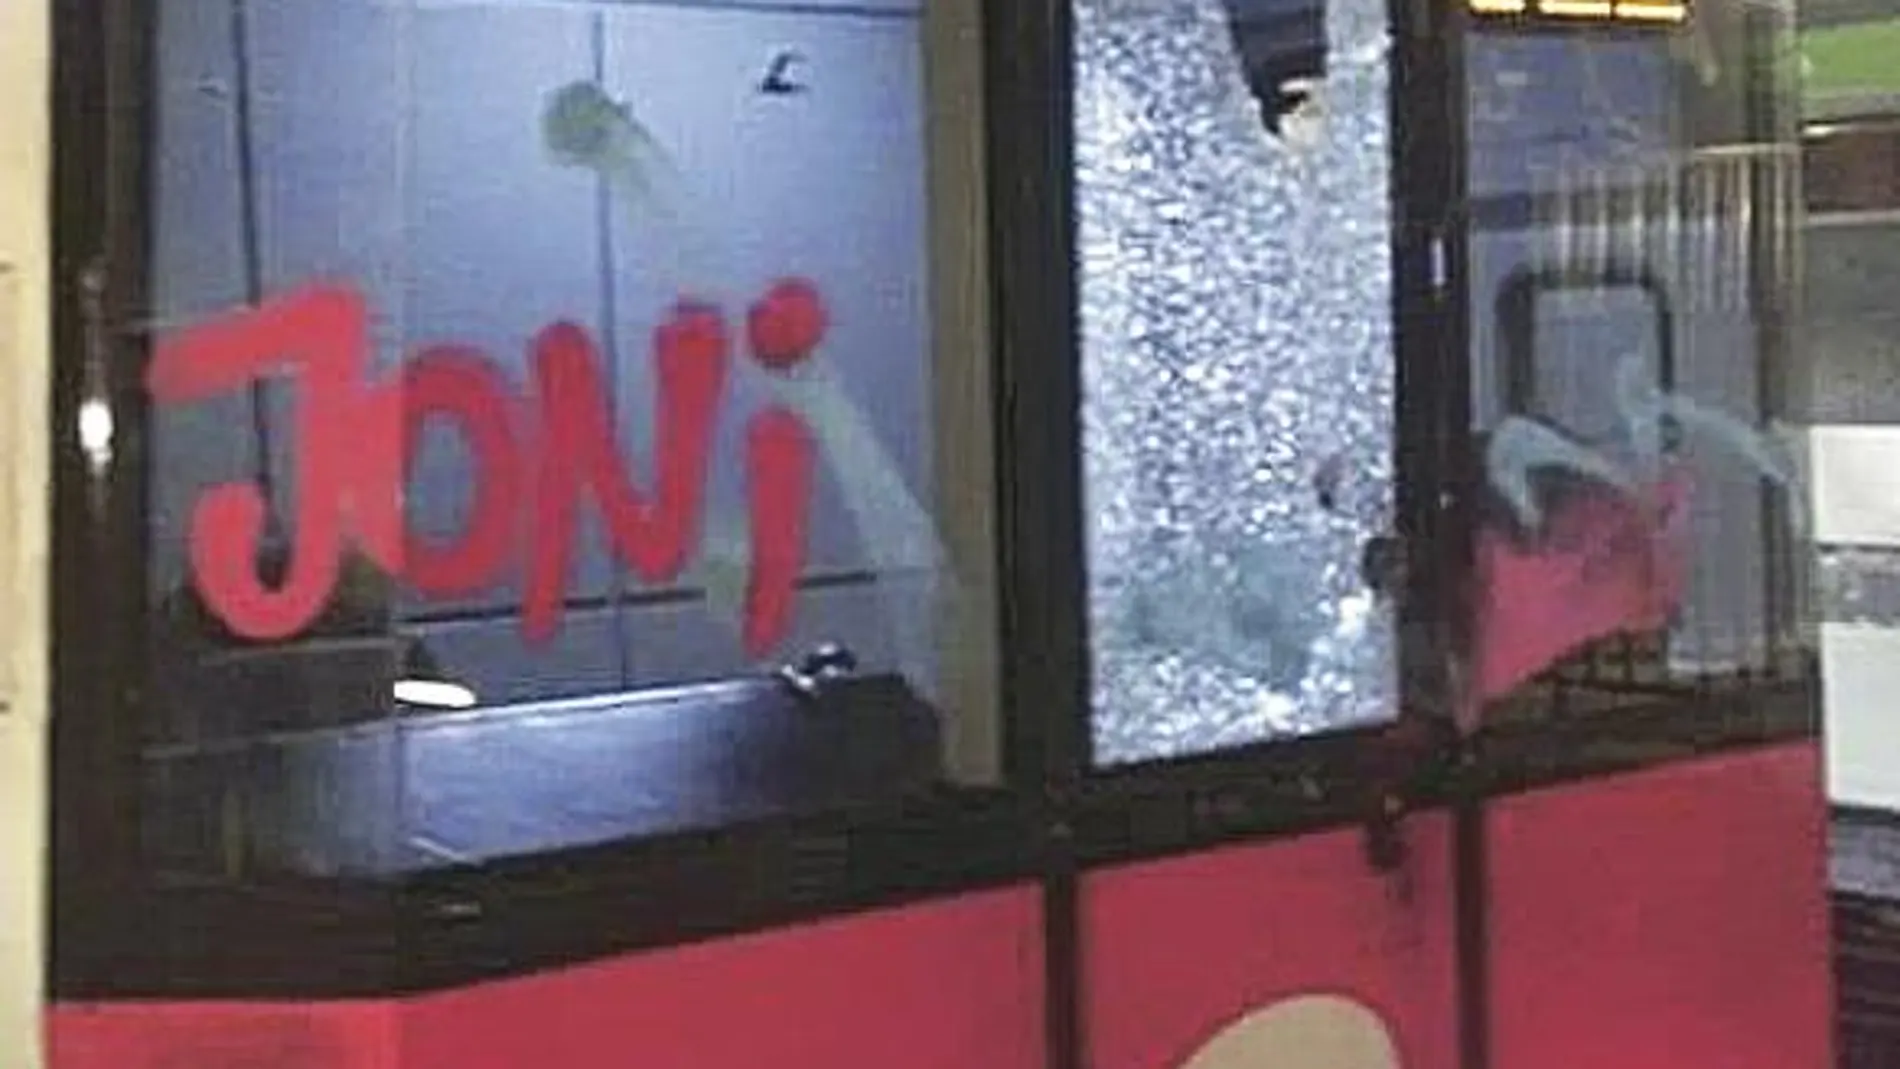 Las pedradas de los grafiteros ocurridas ayer en el Metro provocaron diversos desperfectos, entre ellos cristales rotos